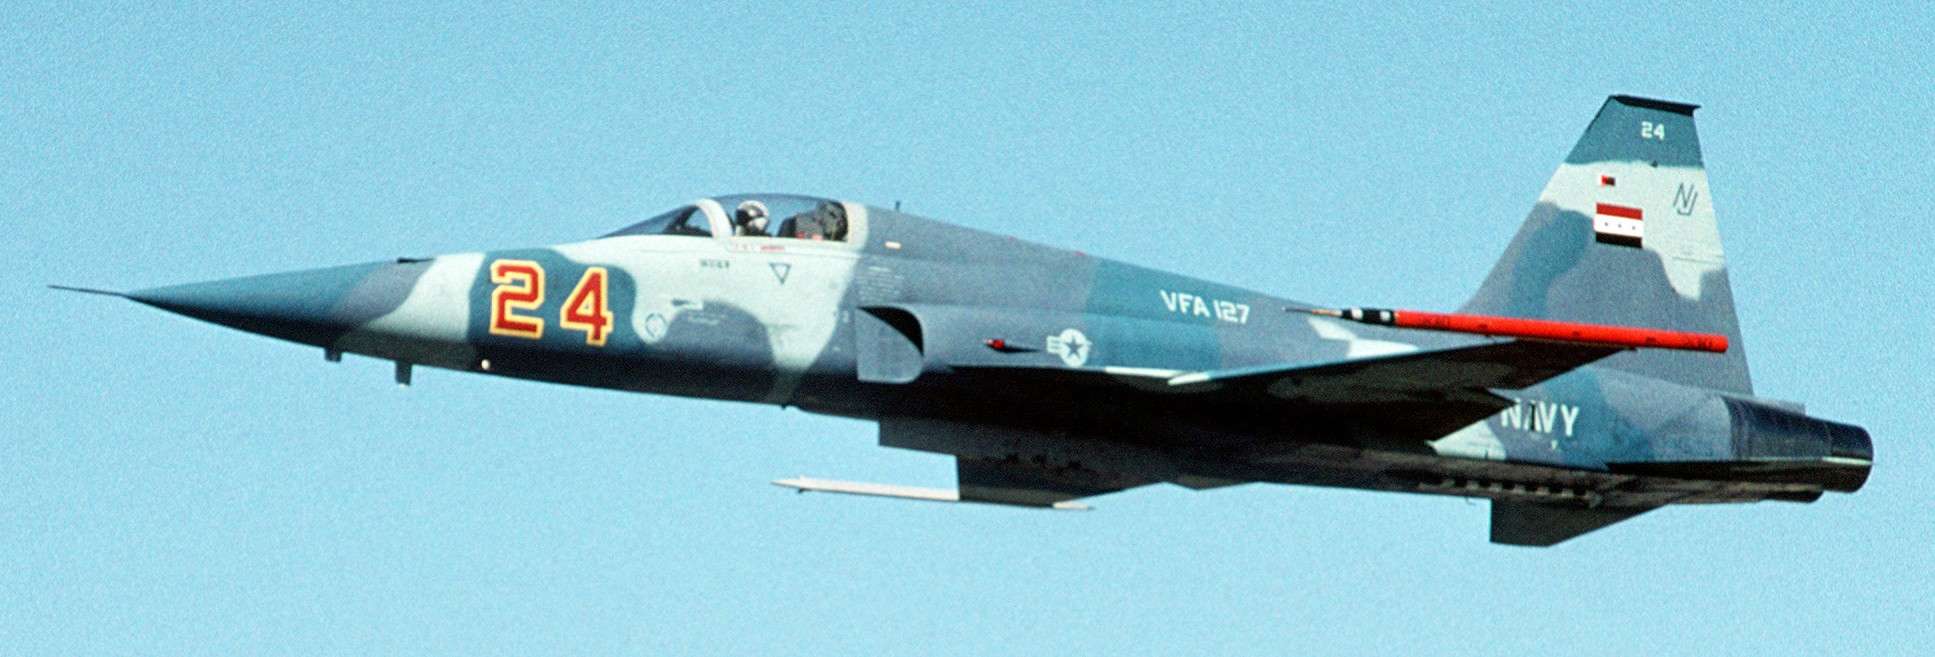 vfa-127 desert bogeys strike fighter squadron f-5e tiger 1993 22 nas fallon